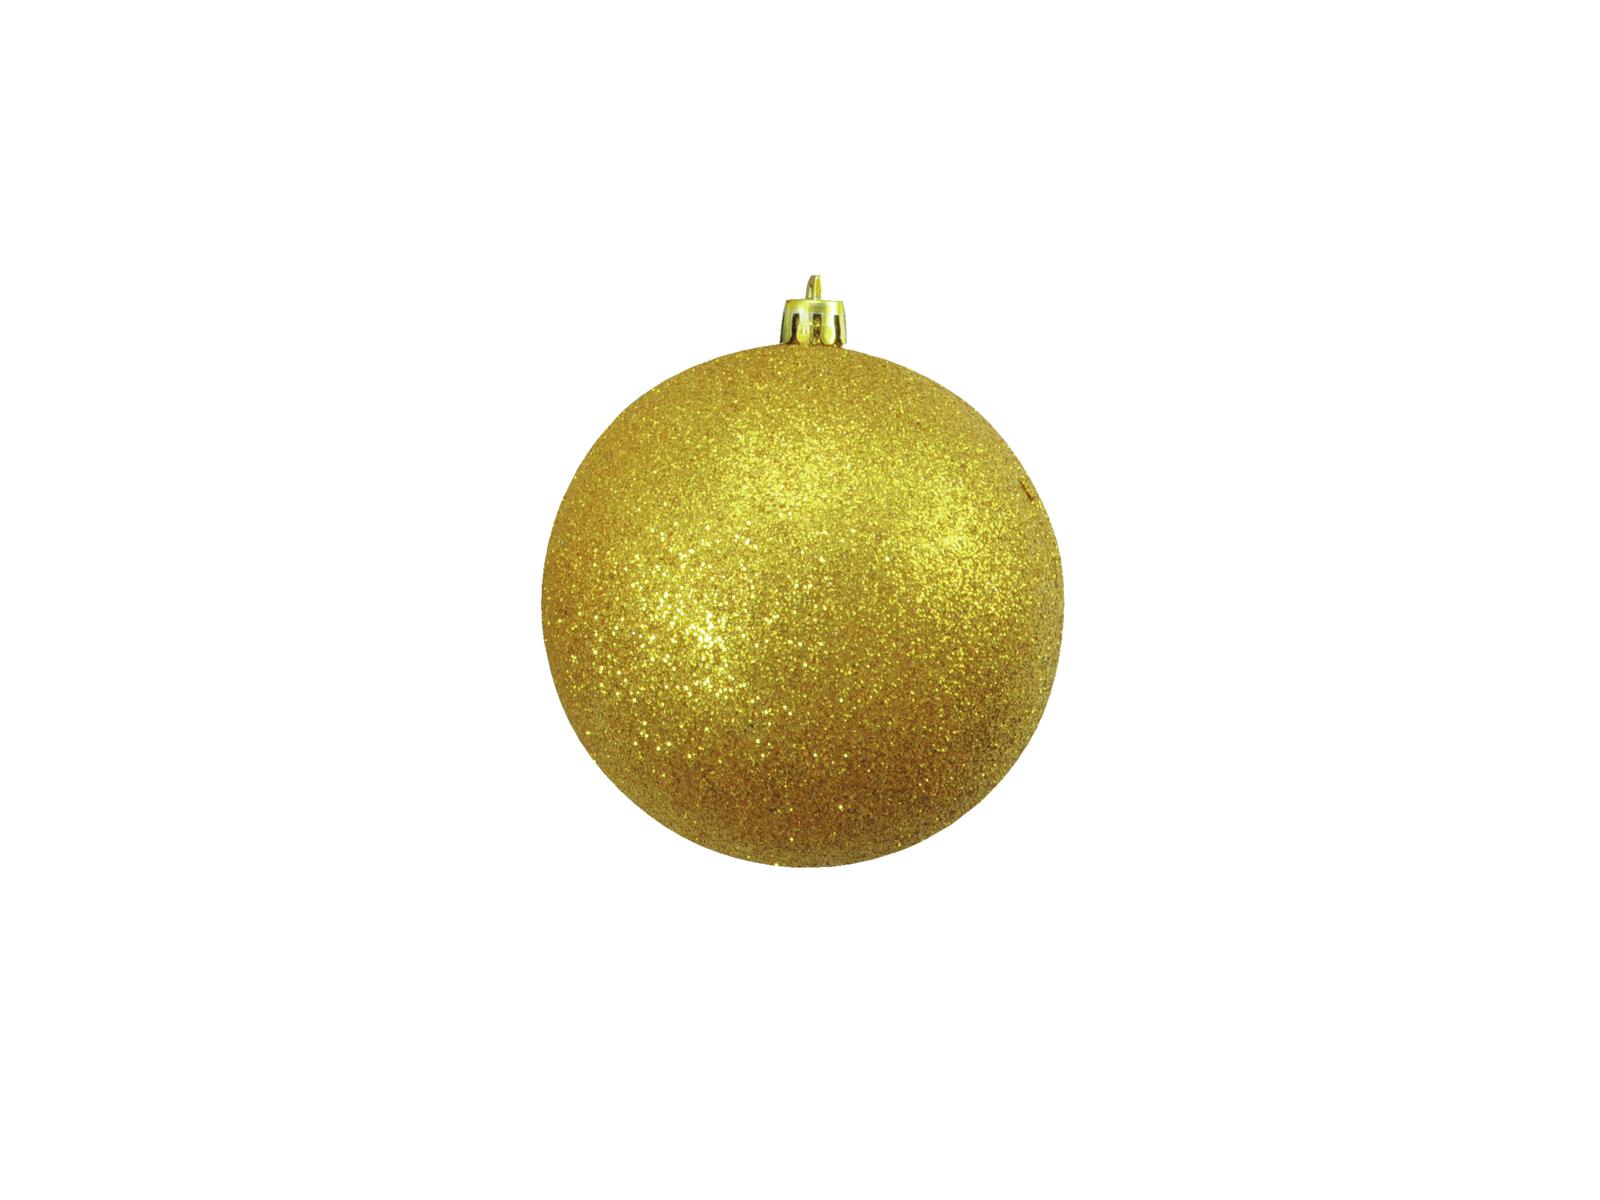 Vánoční ozdoby | Vánoční ozdoby 10cm, 4ks zlaté s glitry | Vánoční ...